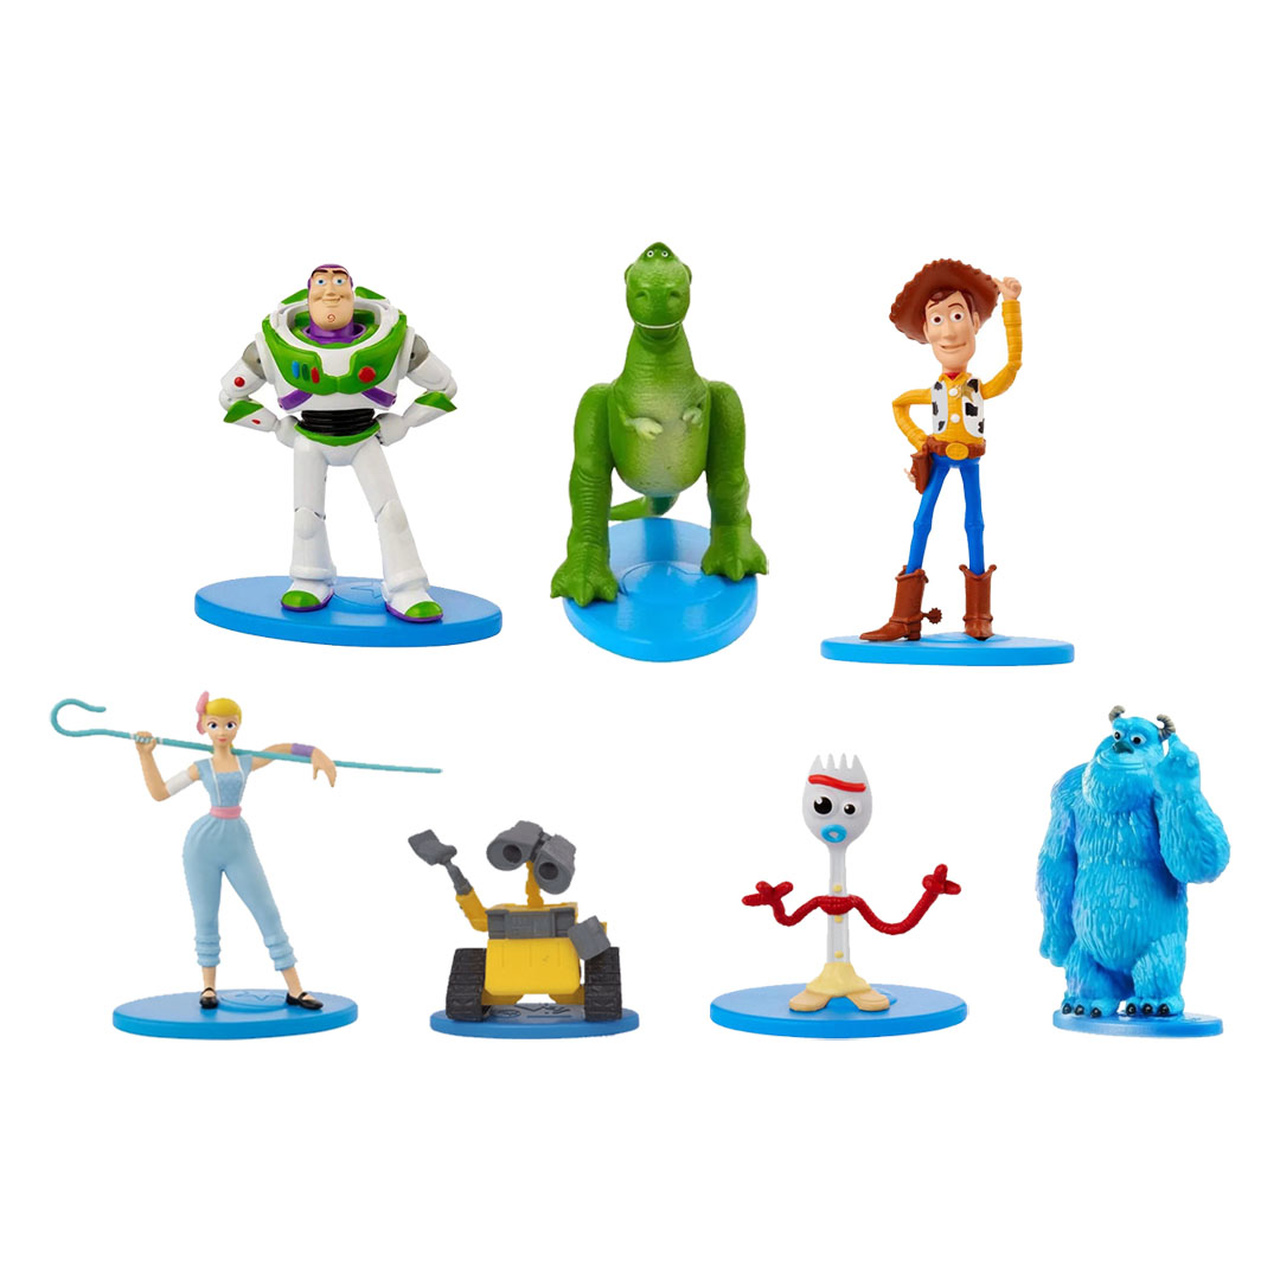 Kit Mini Figuras 6 Cm Colecionáveis Disney Pixar - Mattel